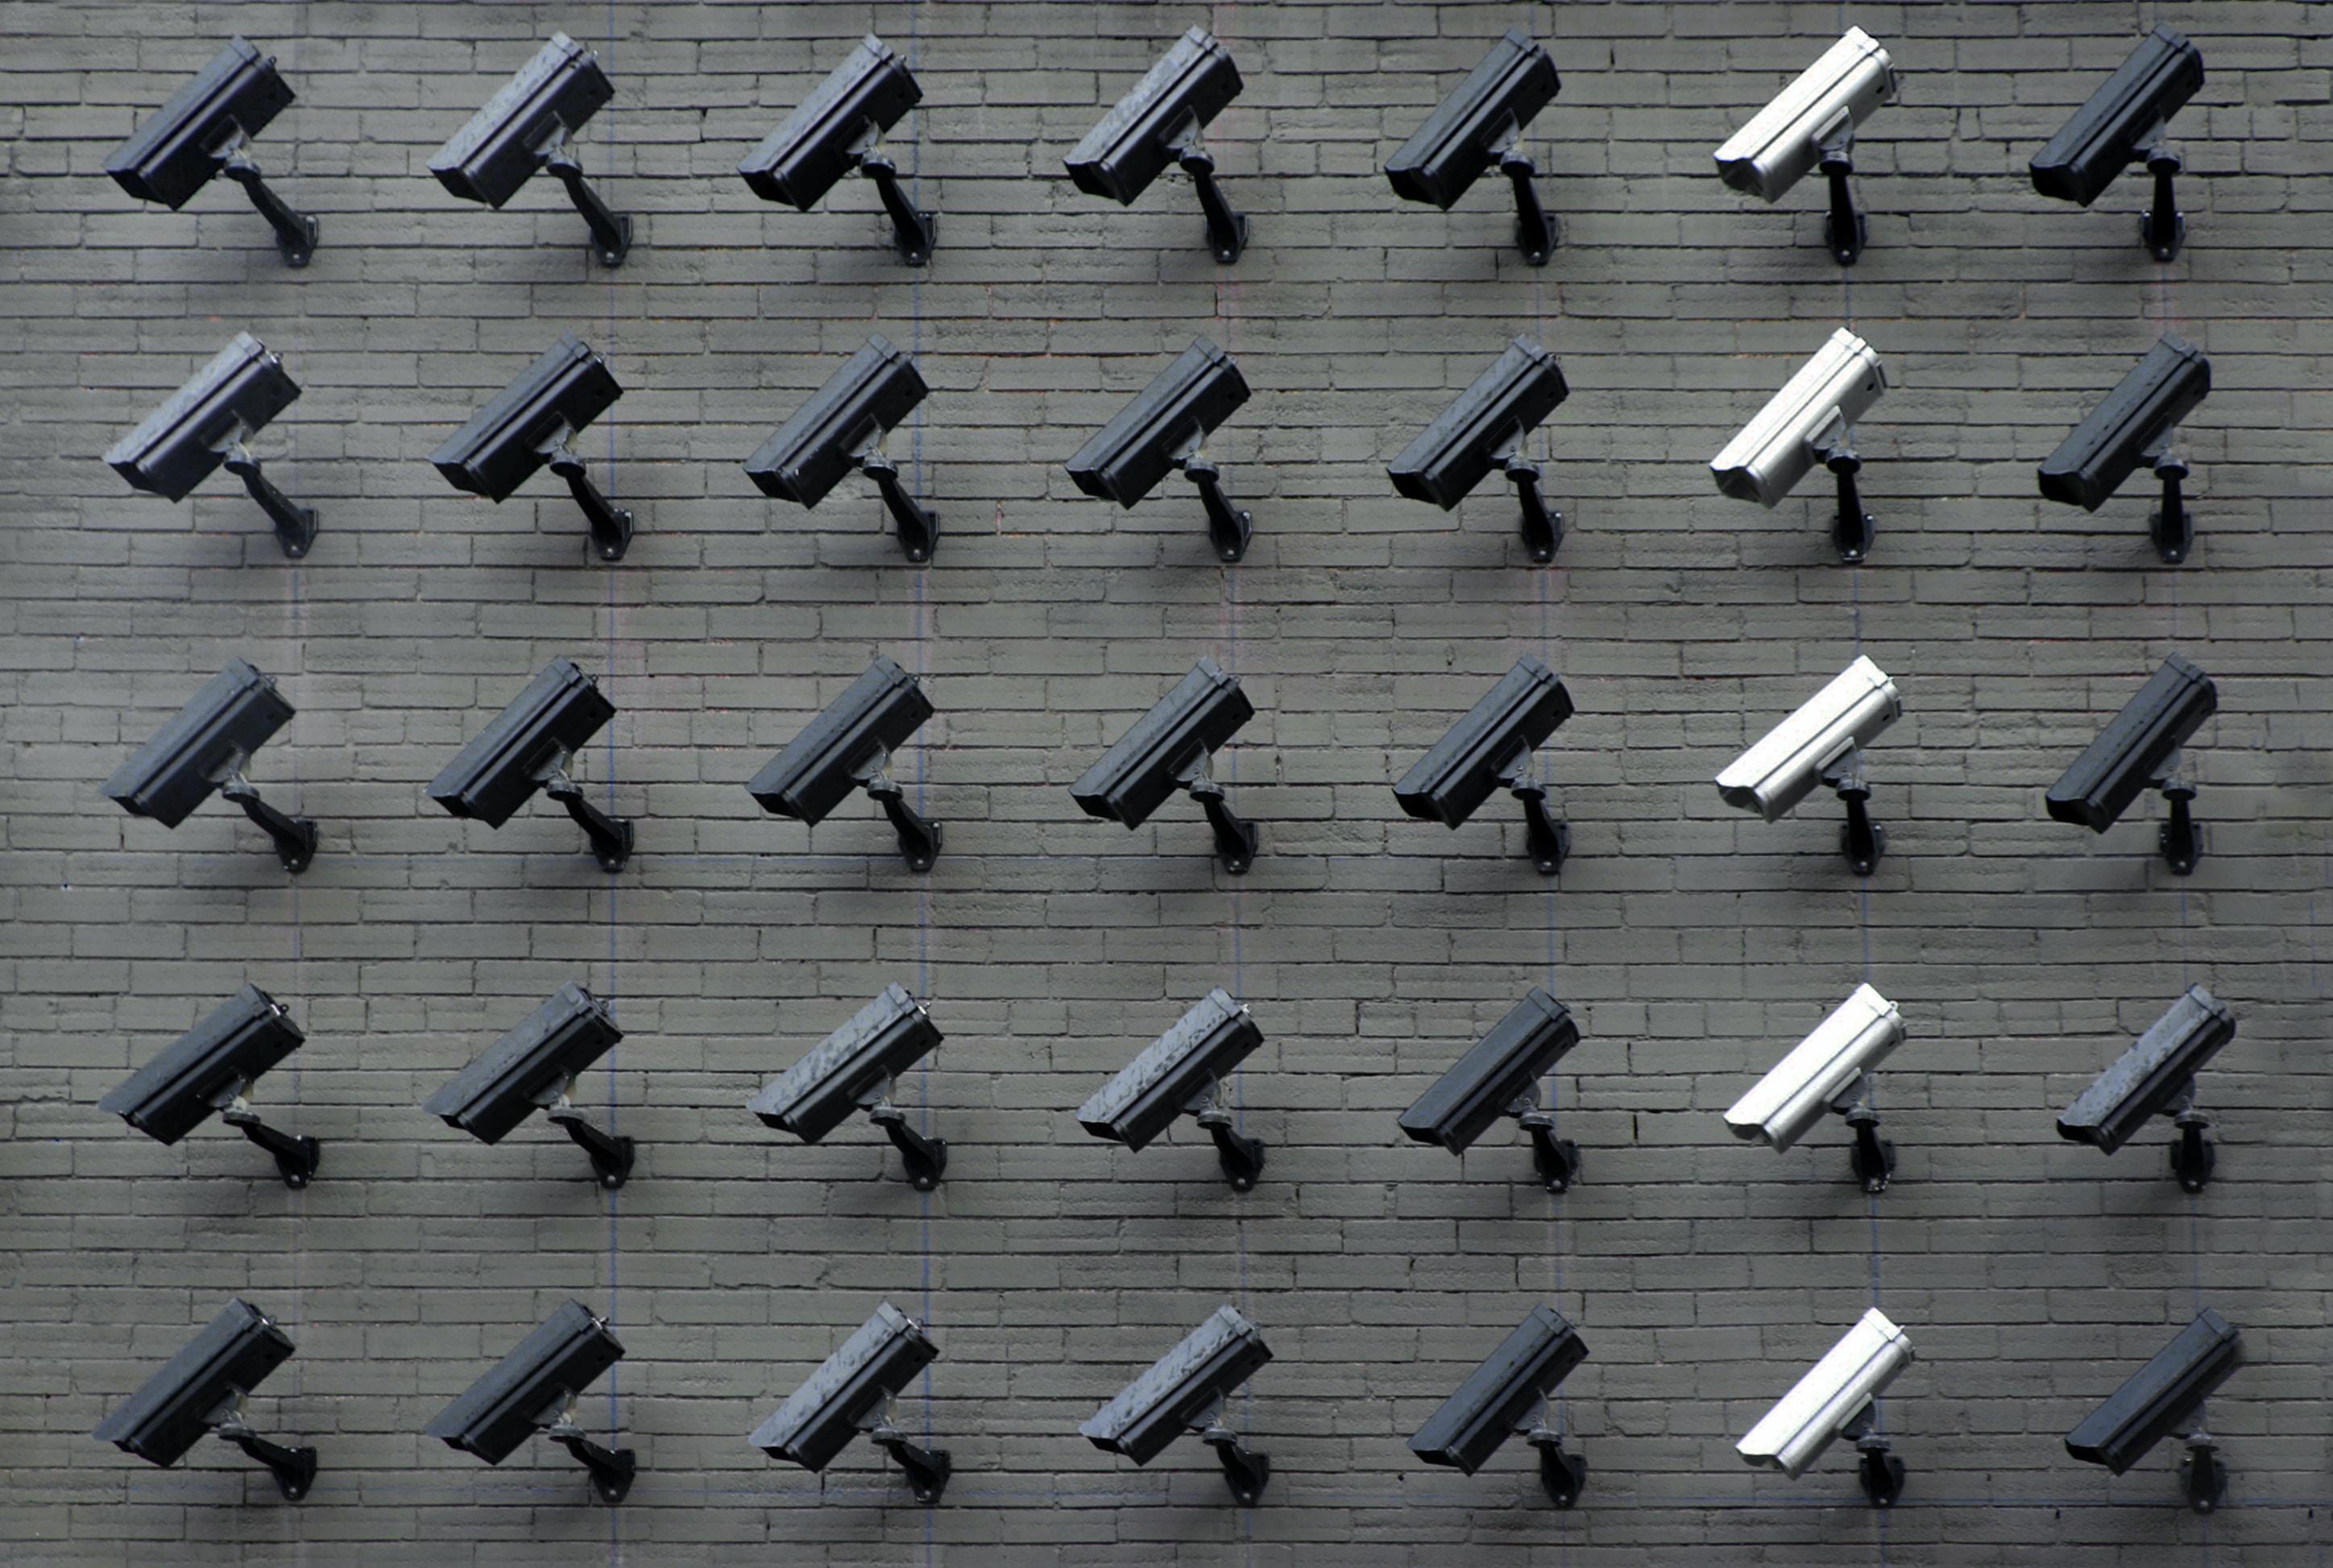 Billede af en masse kameraer for at illustrere, at det handler om overvågning